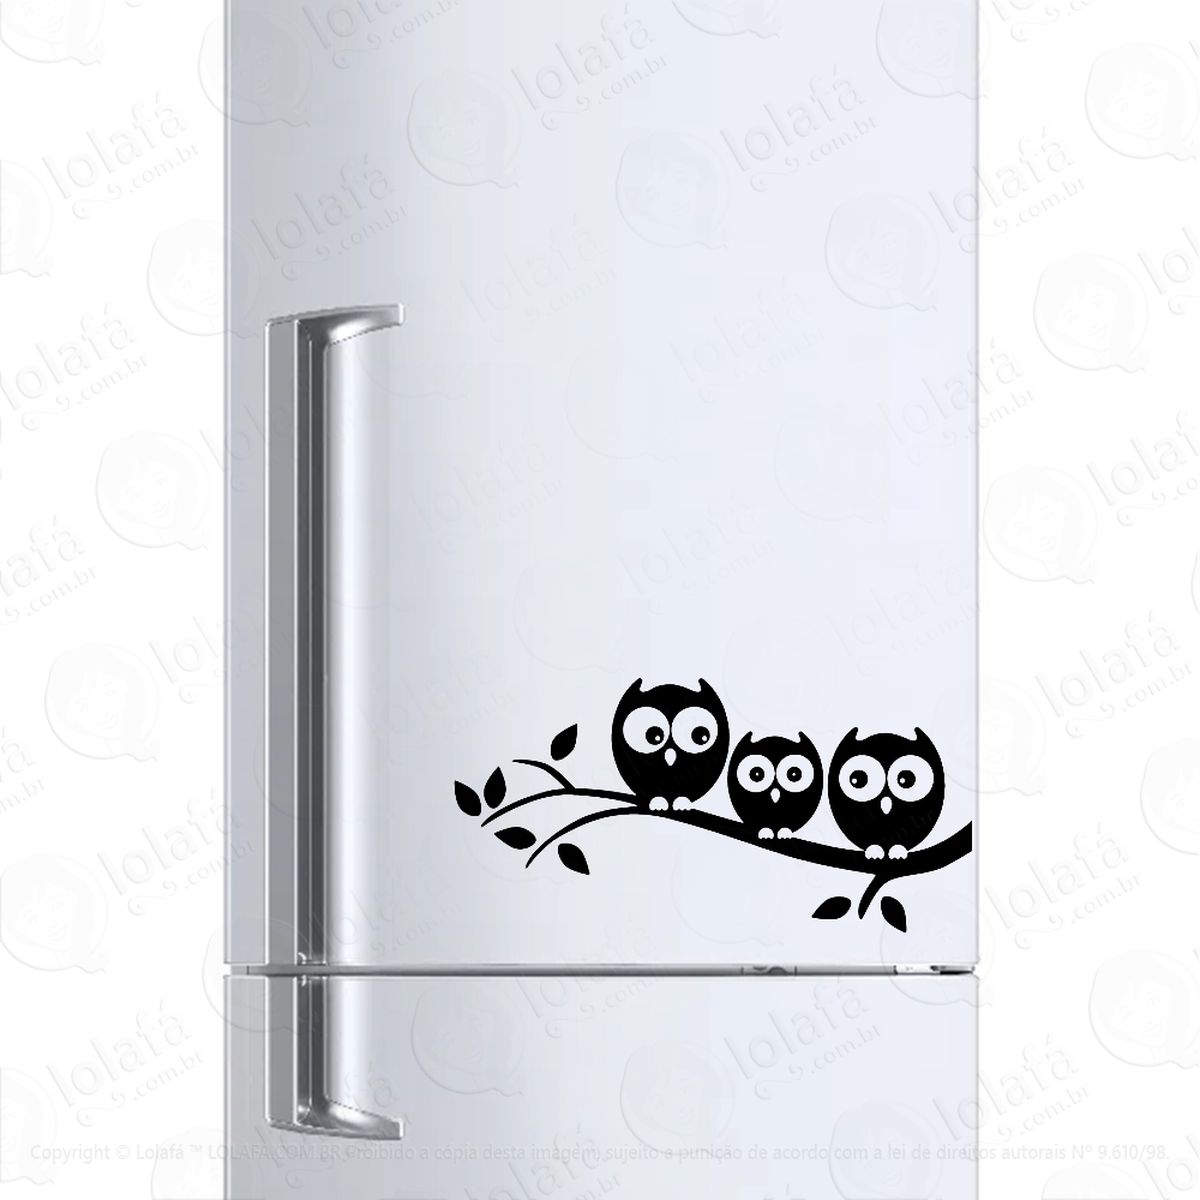 adesivo geladeira frigobar cervejeira corujas filhote galho mod:224